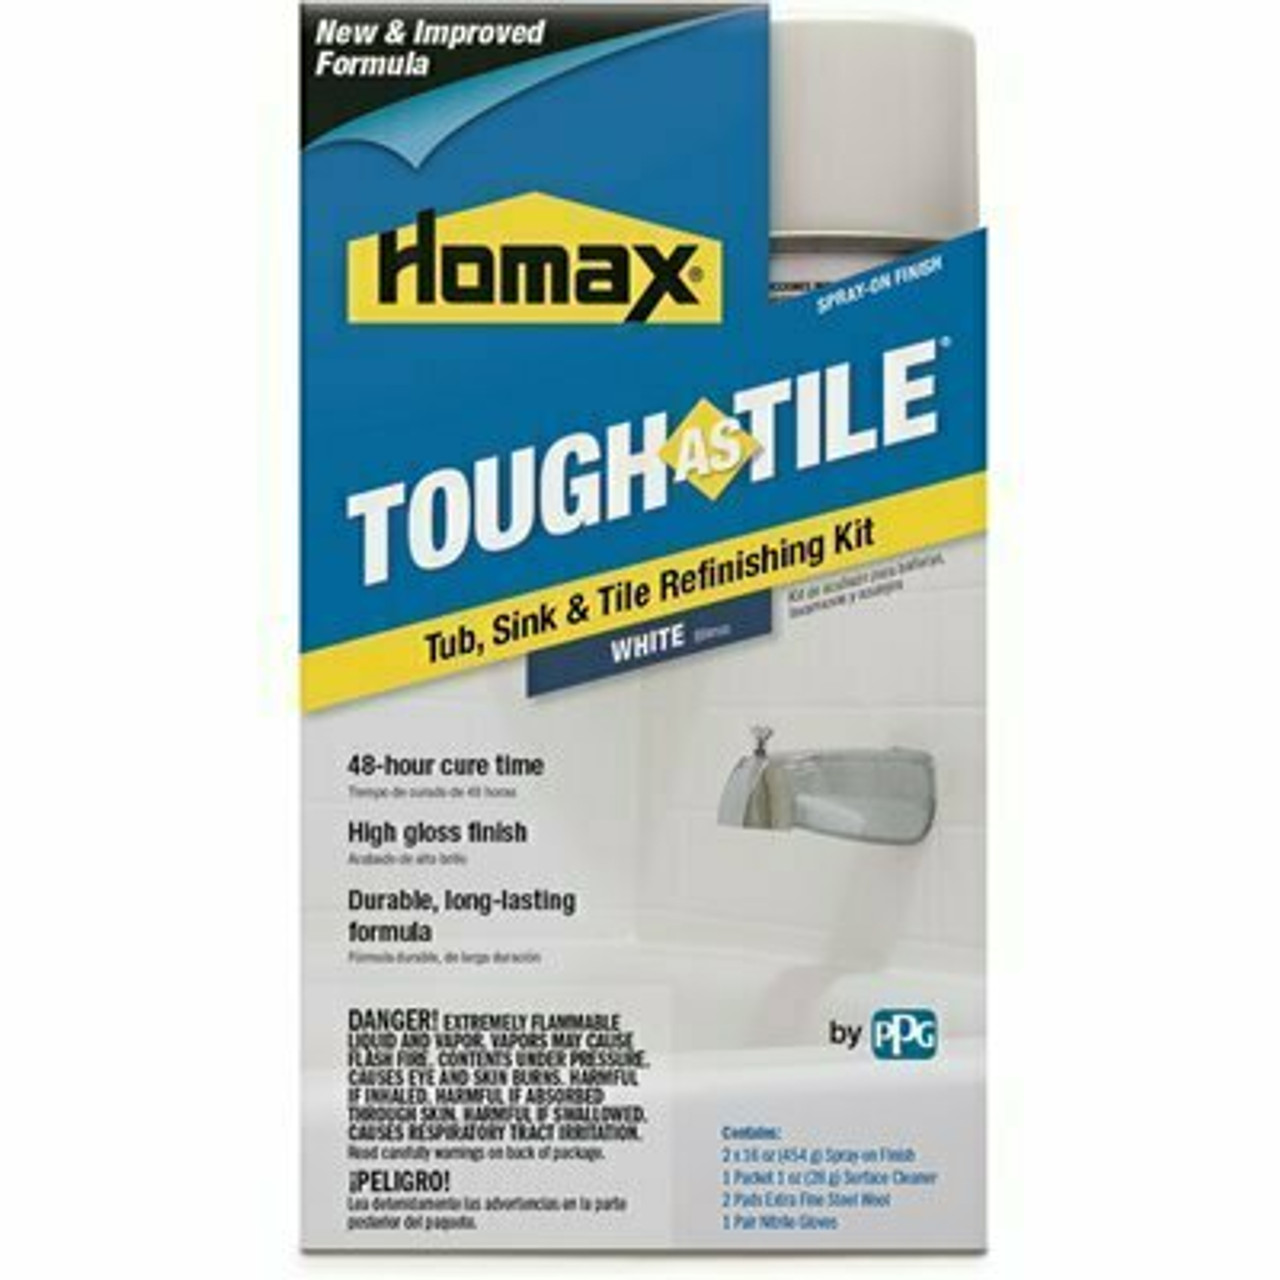 Homax 32 Oz. White Tough As Tile Aerosol Tub, Sink, And Tile Refinishing Kit